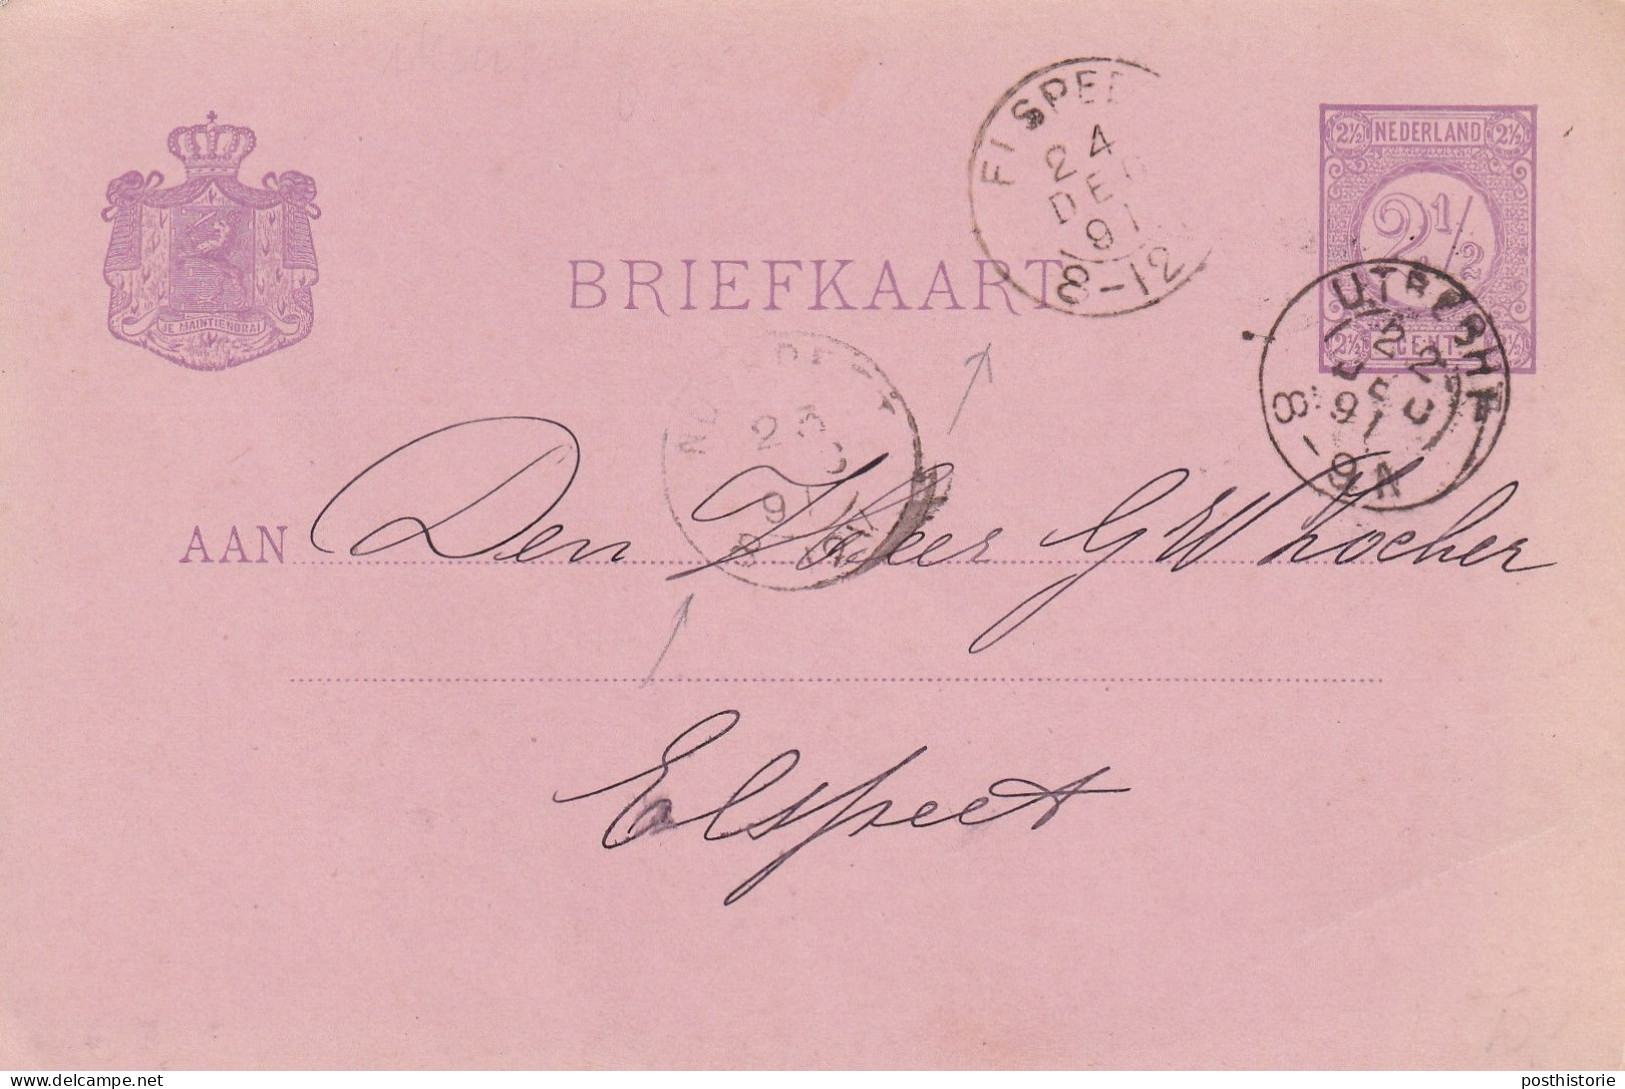 Briefkaart 22 Deec 1891 Utrecht Via Nunsoeet Enaar Elkspeetl (hulpkantor Kleinrond) - Poststempel